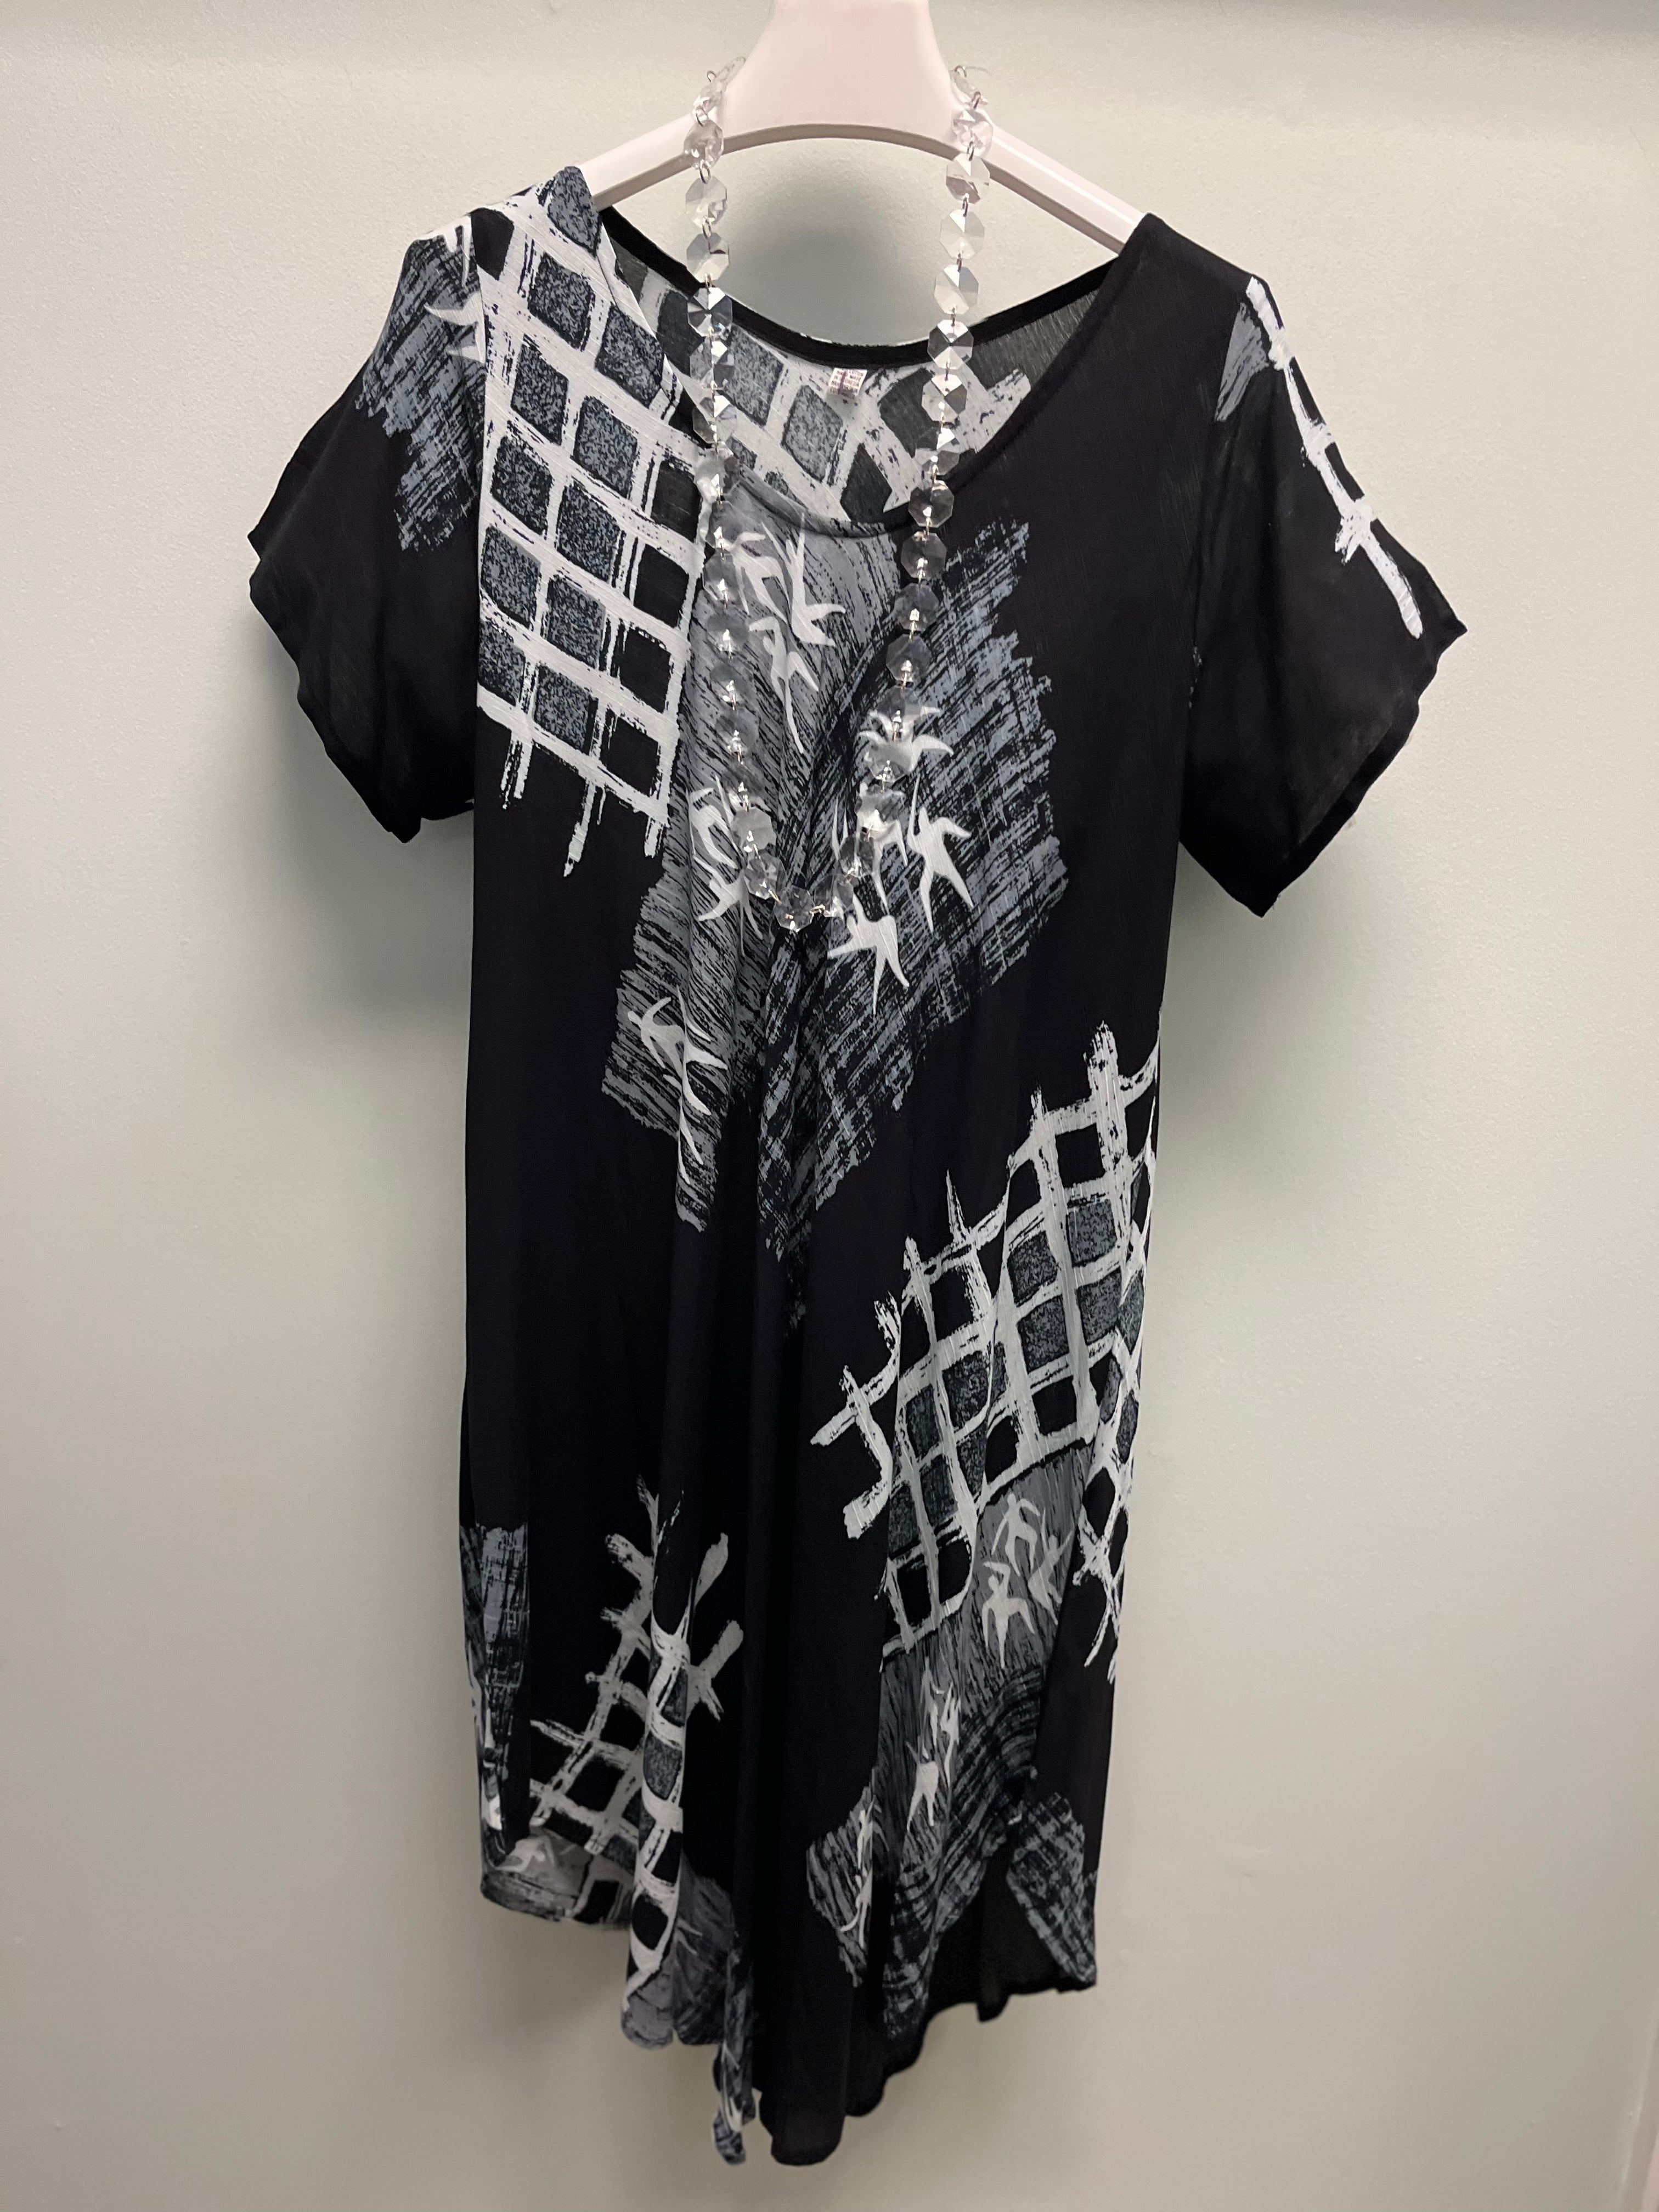 Kembali Black Batik Print Dress